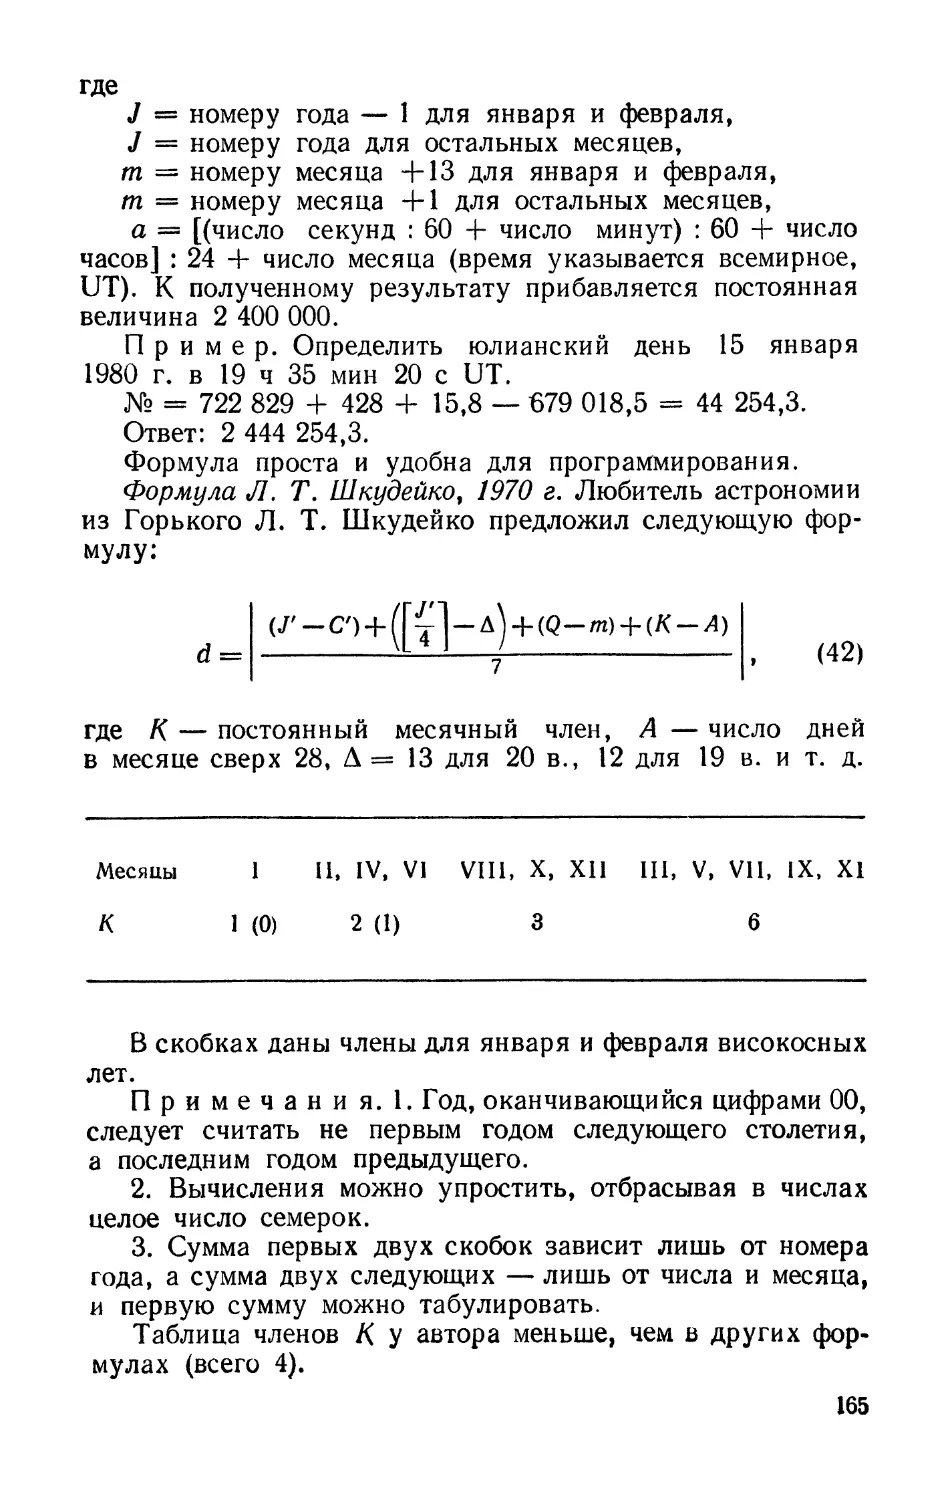 Формула Л. Т. Шкудейко, 1970 г.